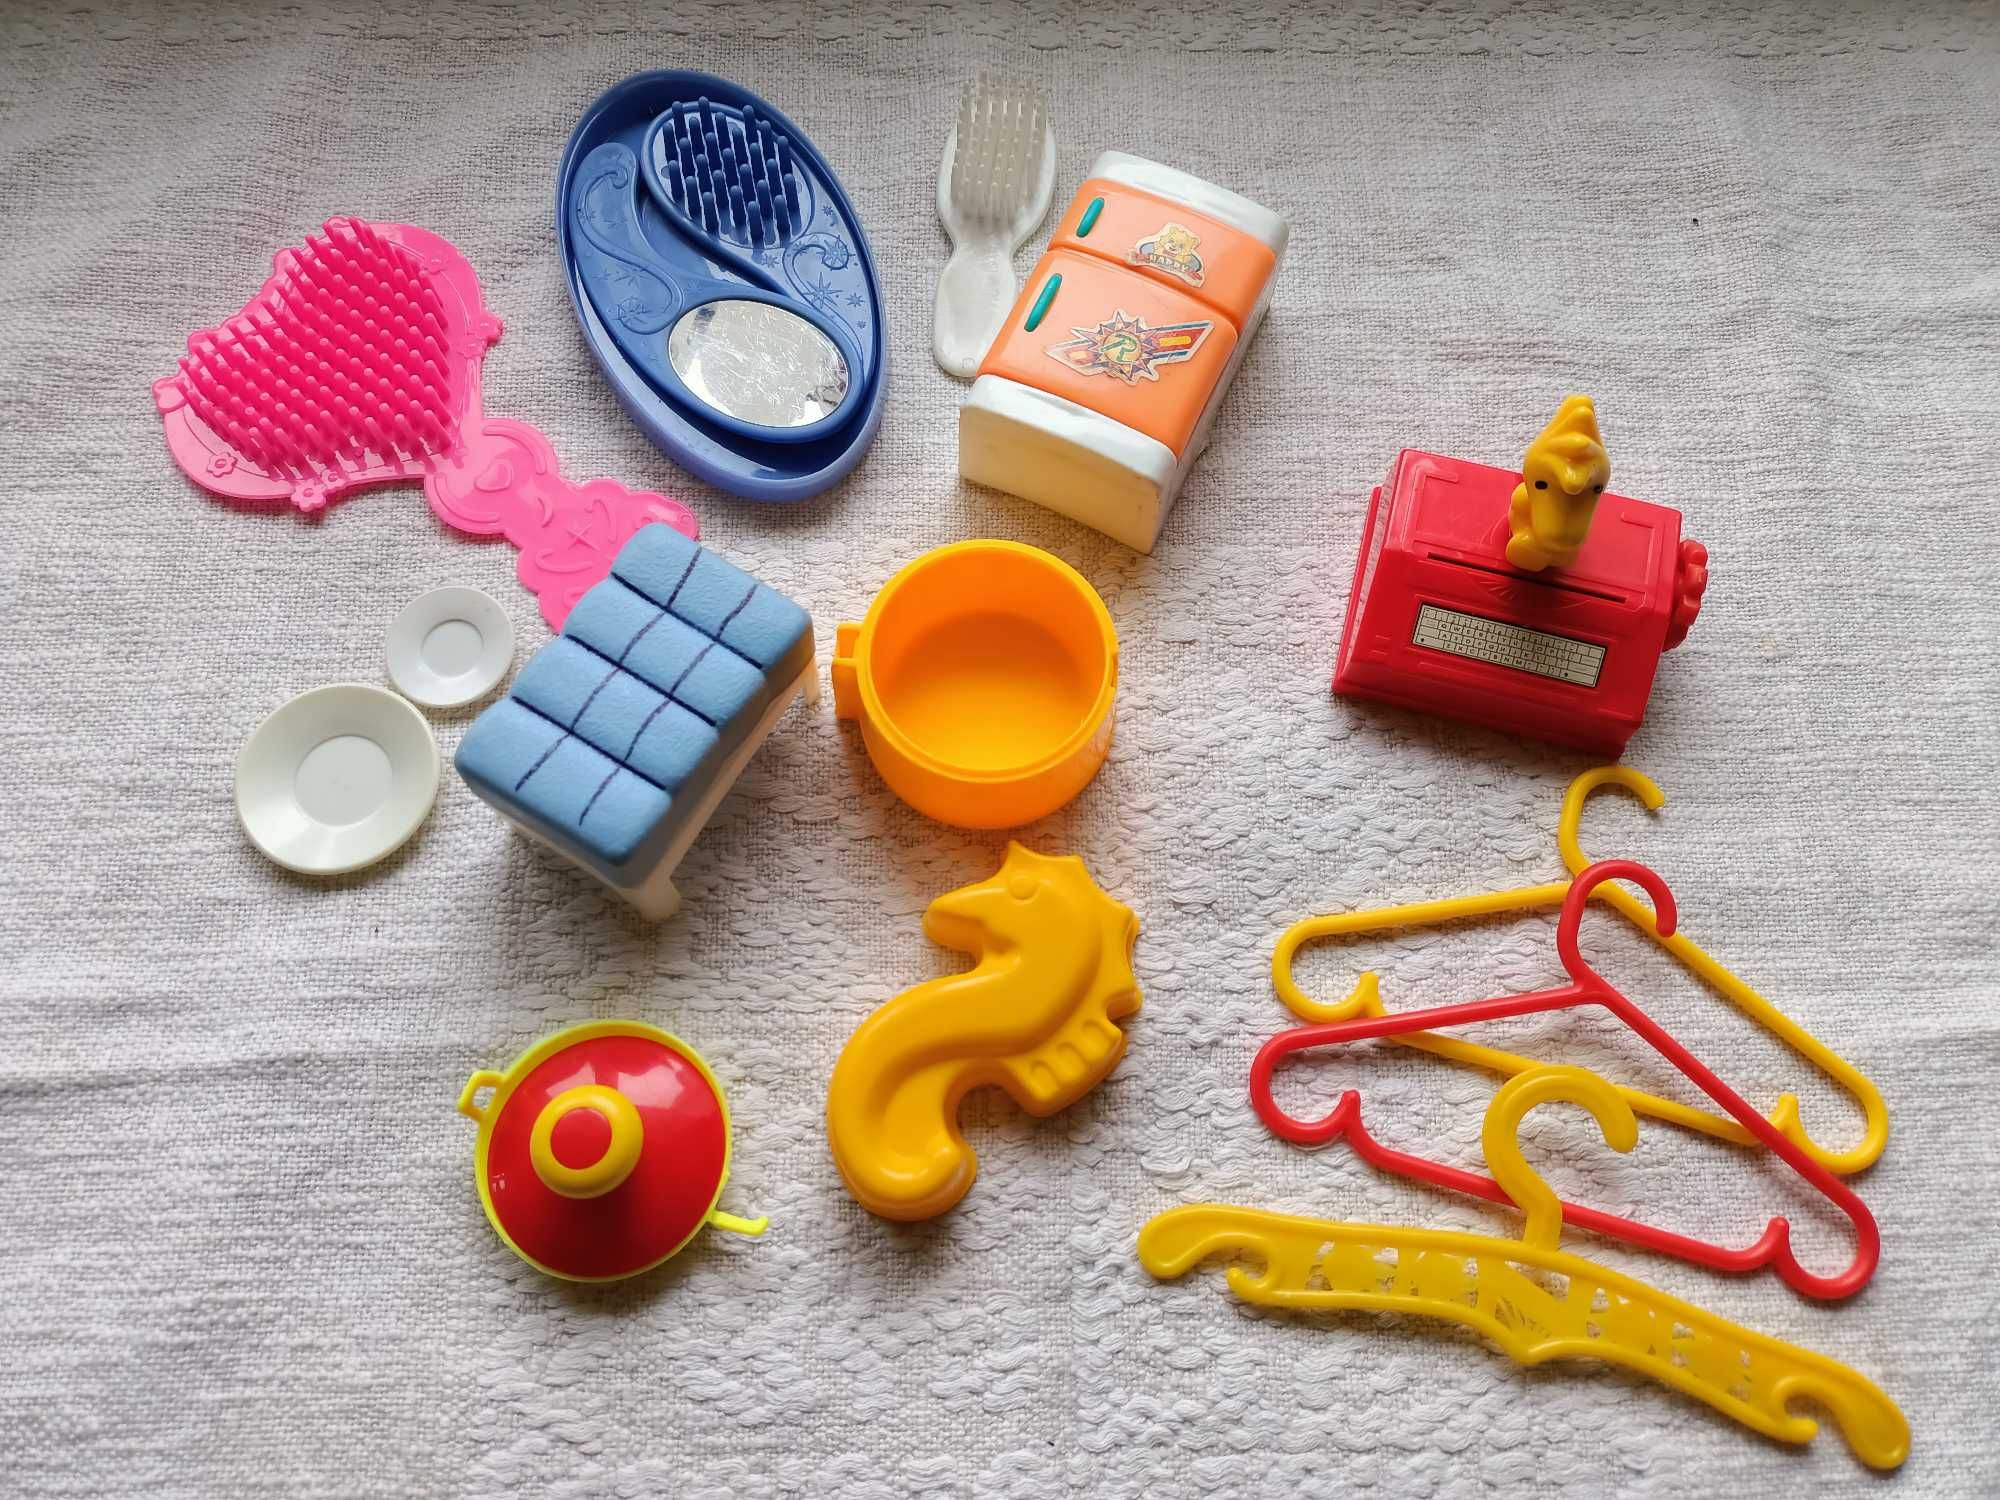 Іграшки дитячі (меблі, посуд, комп'ютер)